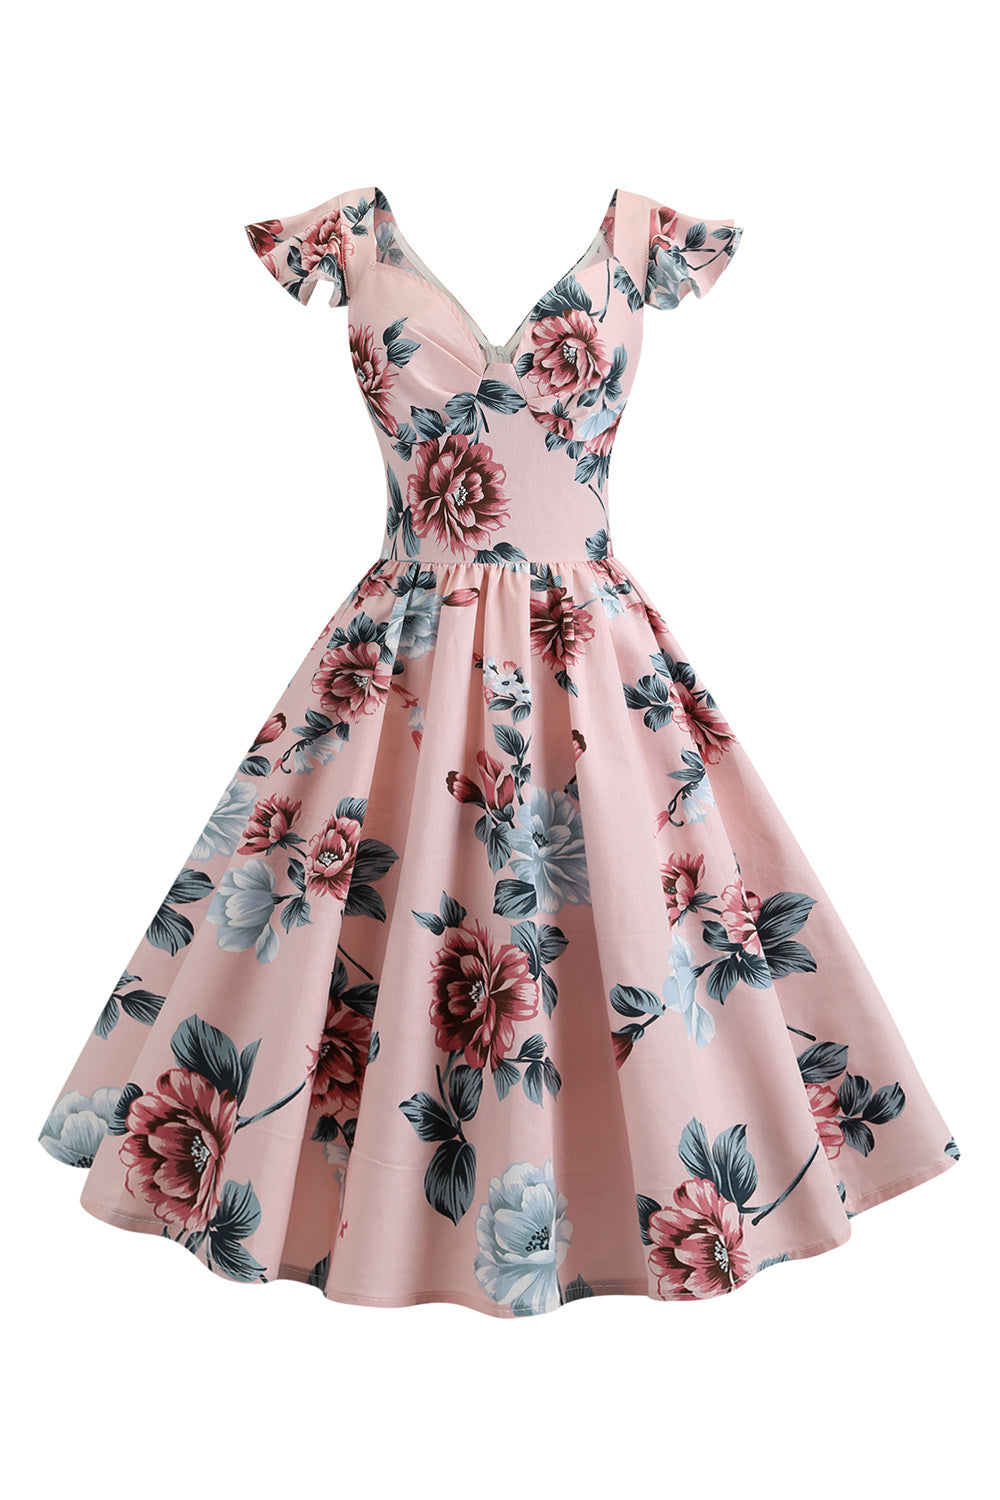 Roze bloemen bedrukte swing jaren 1950 jurk